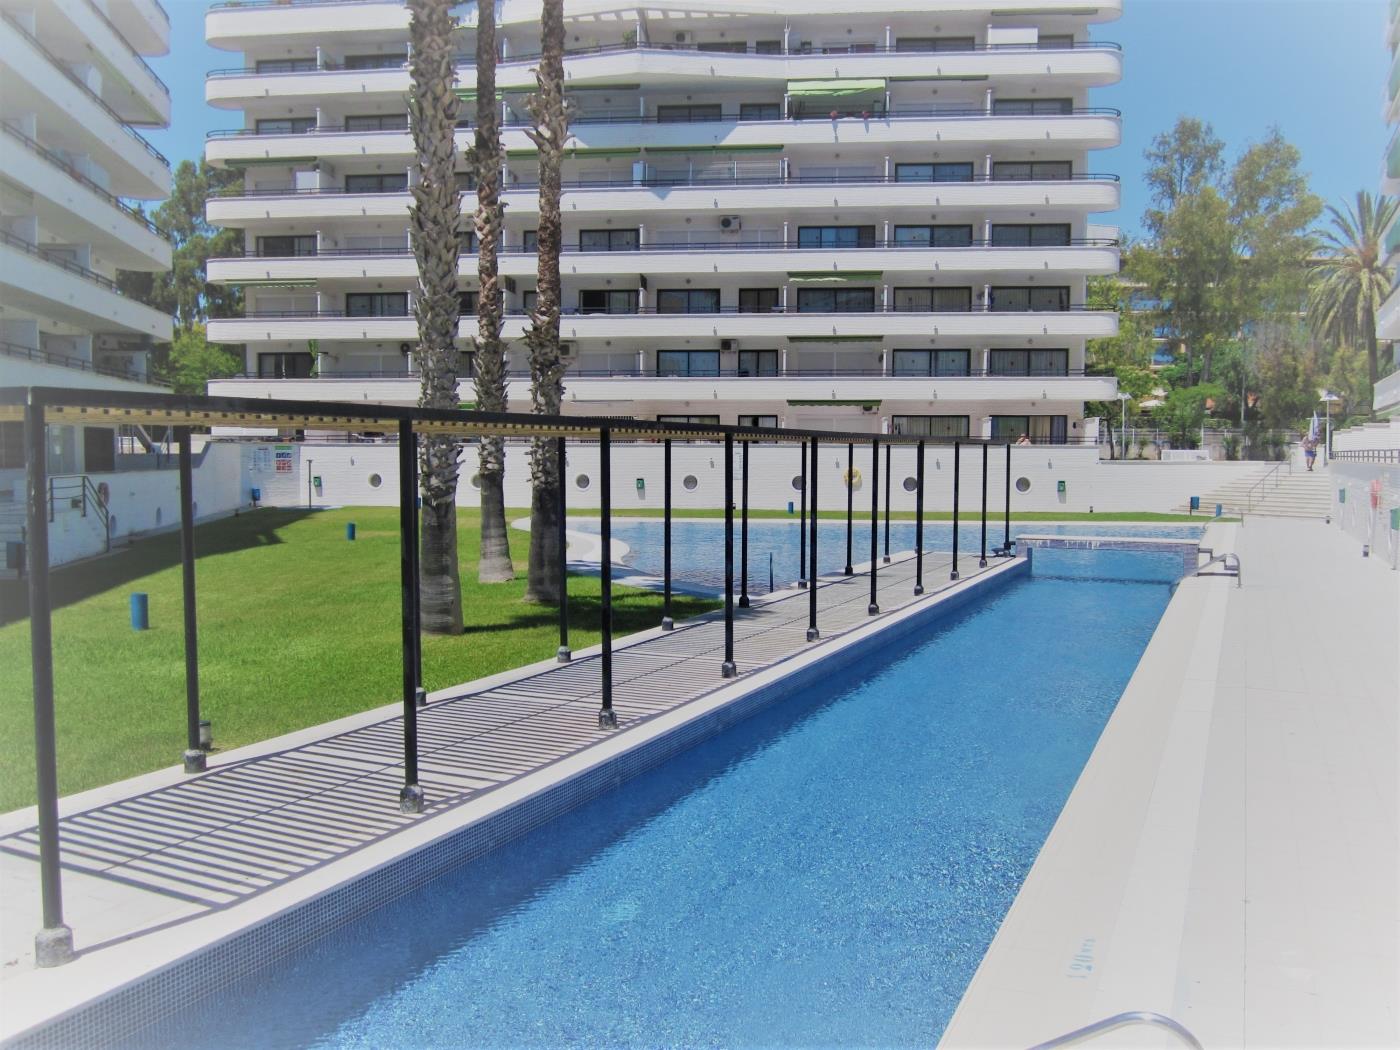 InmoBooking Cannes Apartments, bien ubicado y con piscina en salou